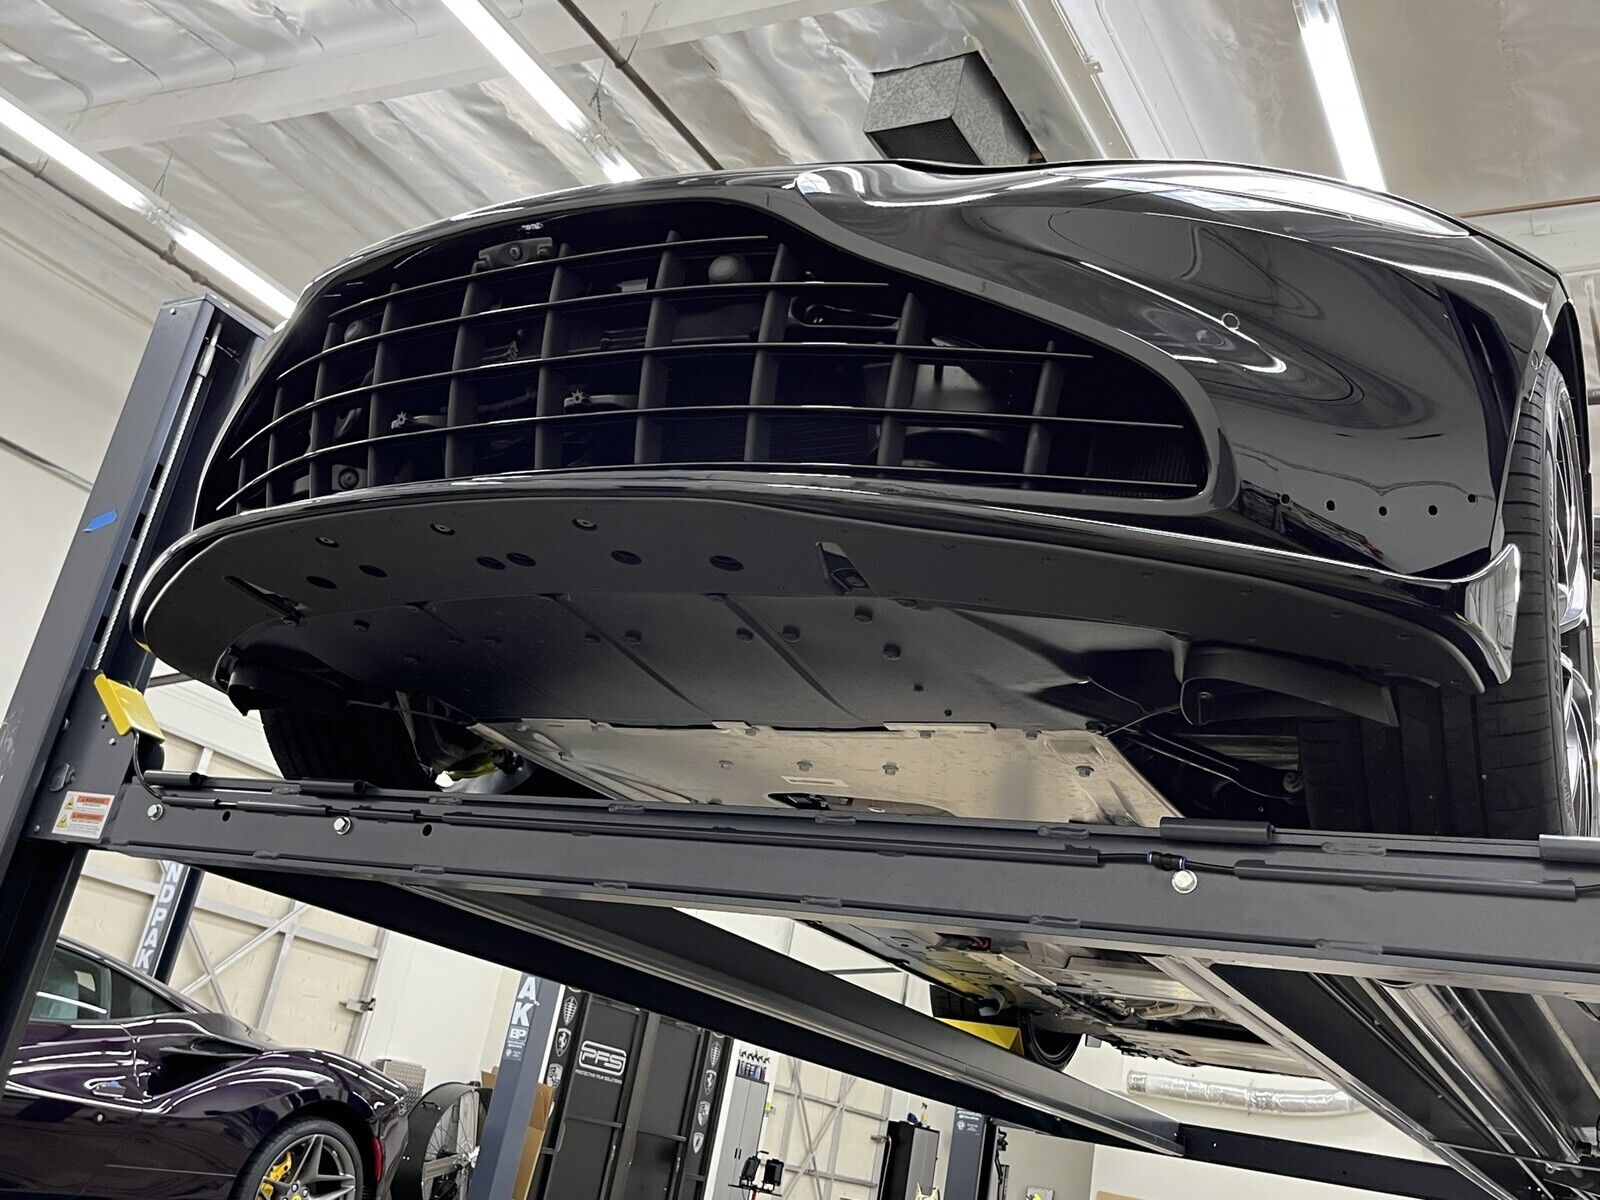 Aston Martin Vantage F1 Edition Skid Plates. Precision Bumper Protection